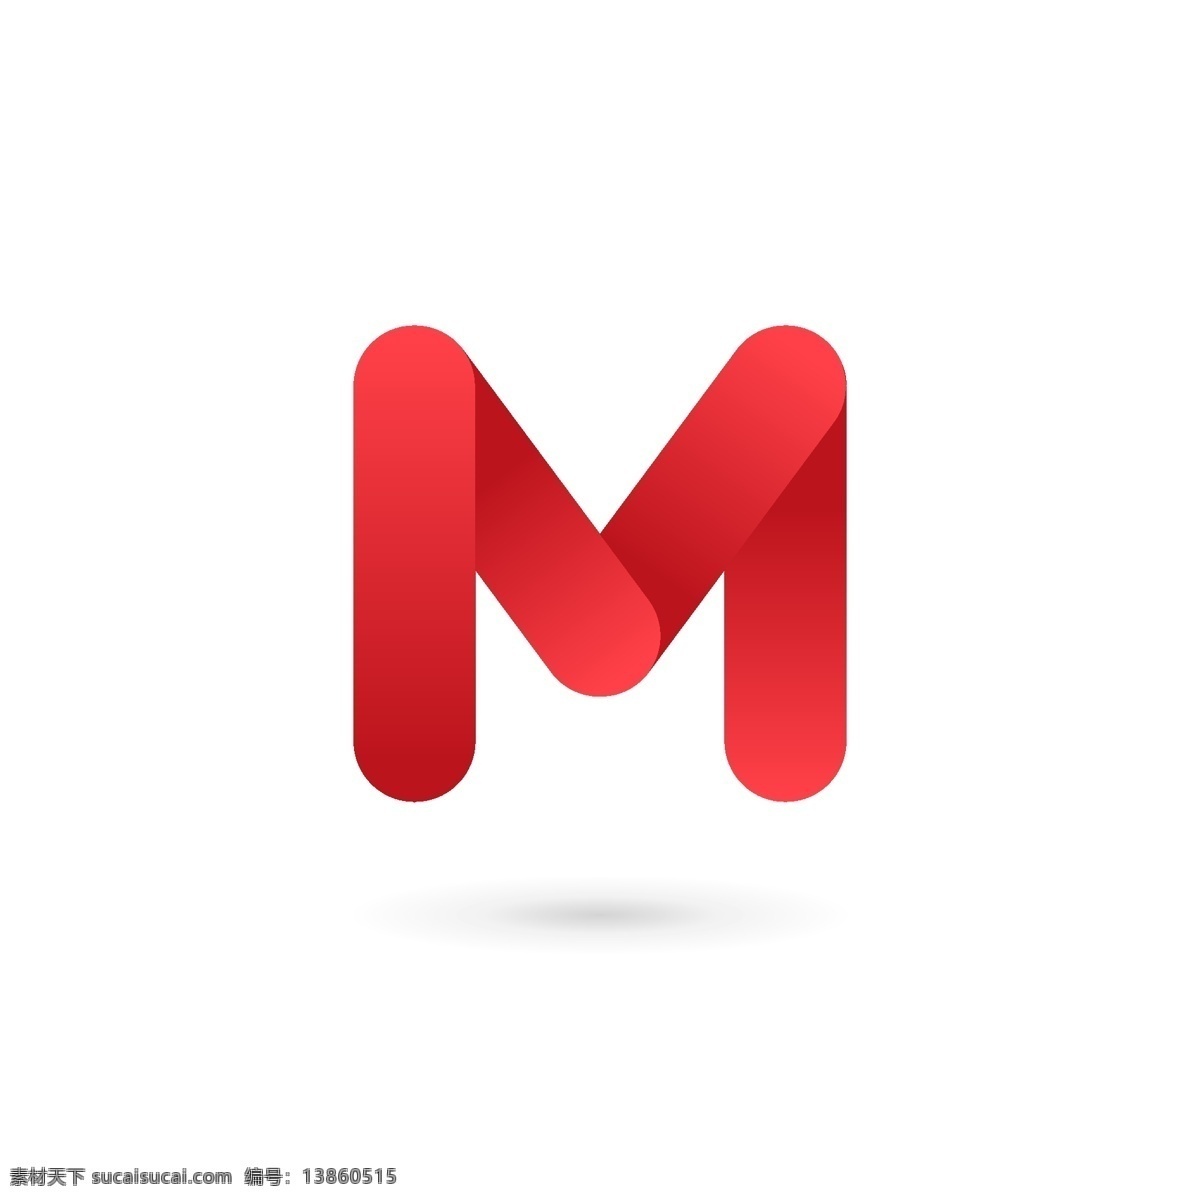 互联网 邮箱 logo 红色 简约 科技 标志 创意 广告 珠宝 科技logo 领域 多用途 标识 公司 企业标识 企业logo 能源